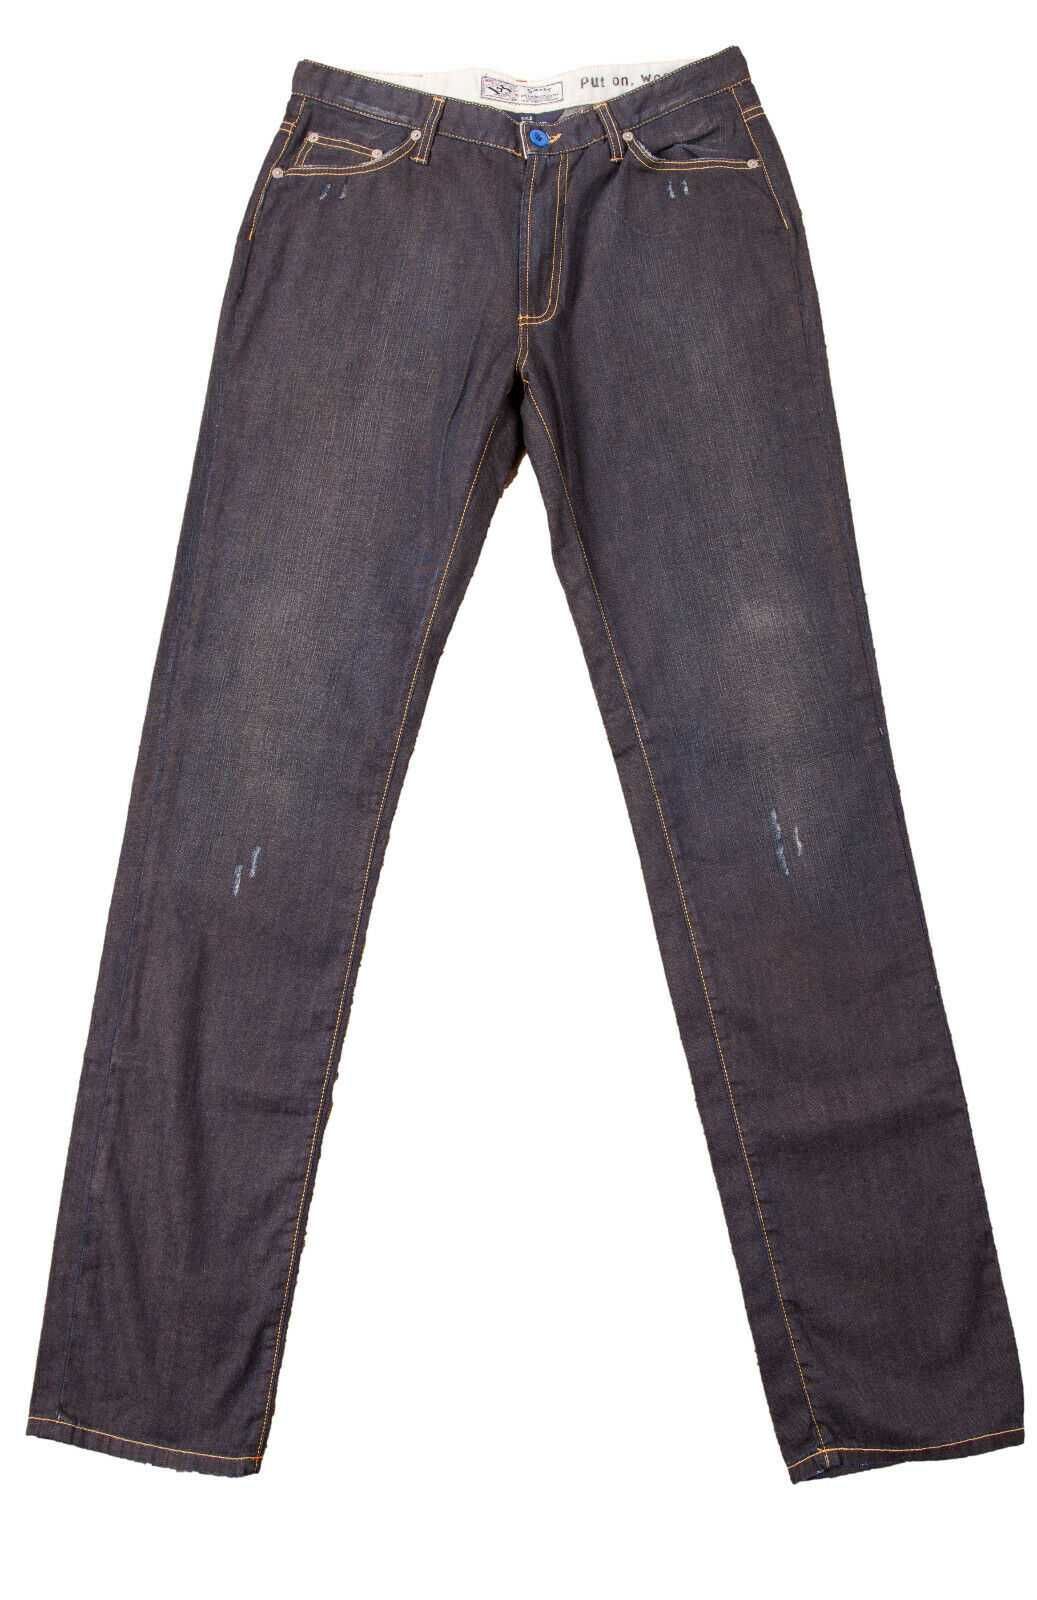 Jeans novas GANT W32L36 - Preço Fixo